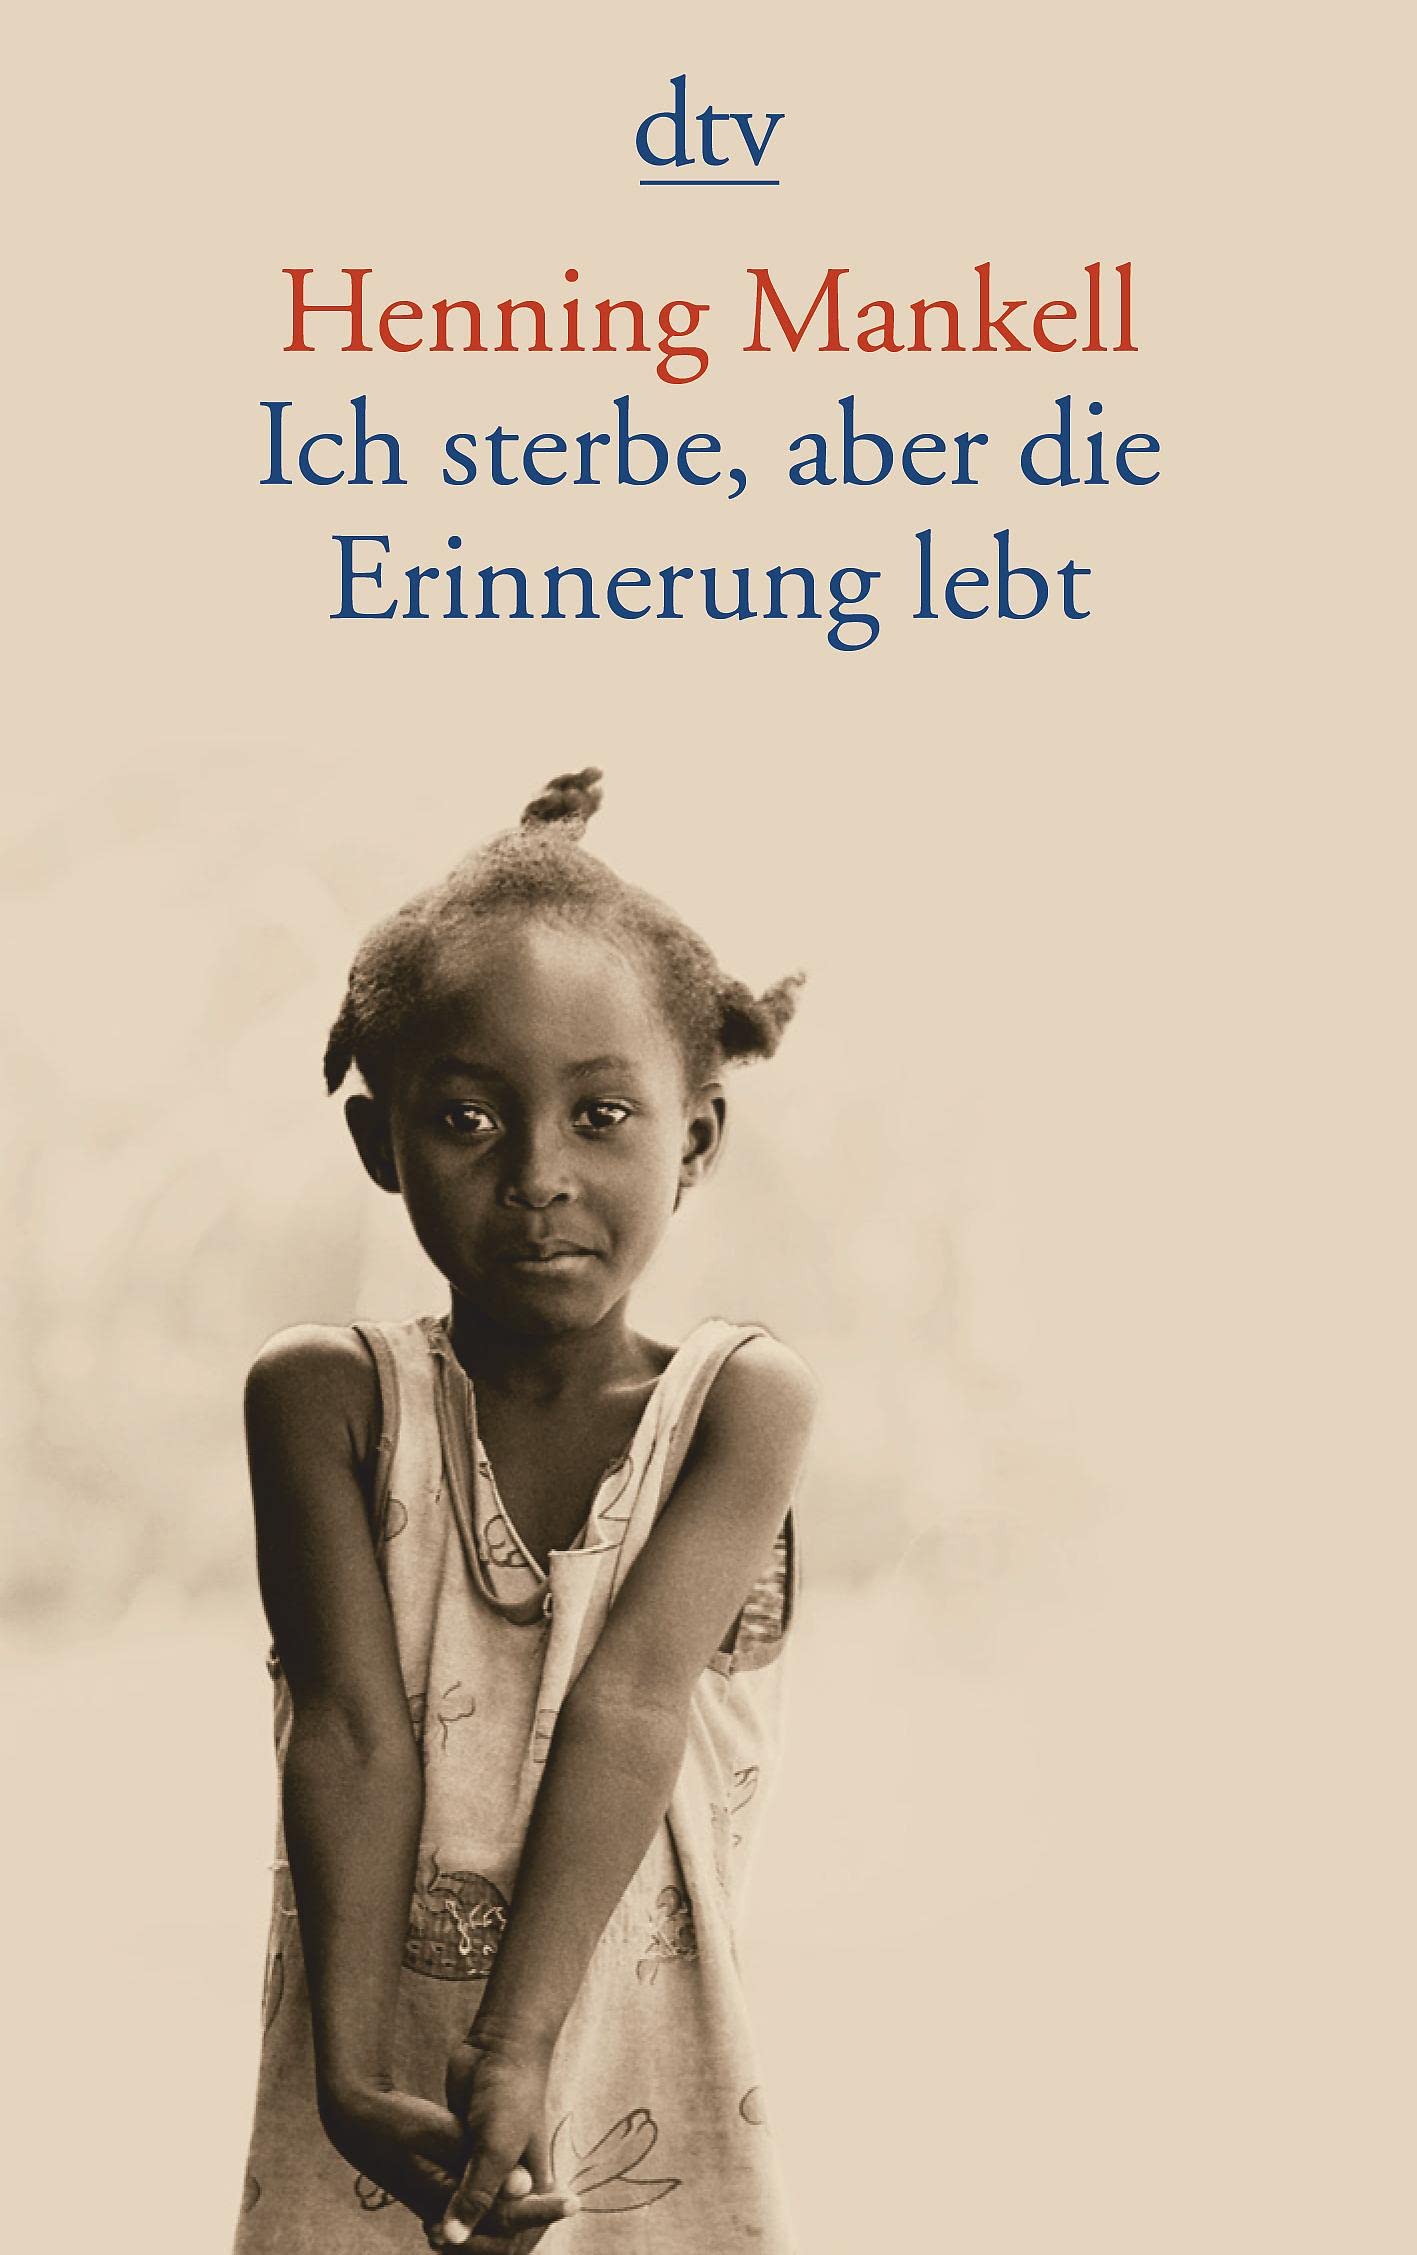 Henning Mankell, Christine Aguga, Ulla Schmidt: Ich sterbe, aber die Erinnerung lebt (German language, 2006, dtv)